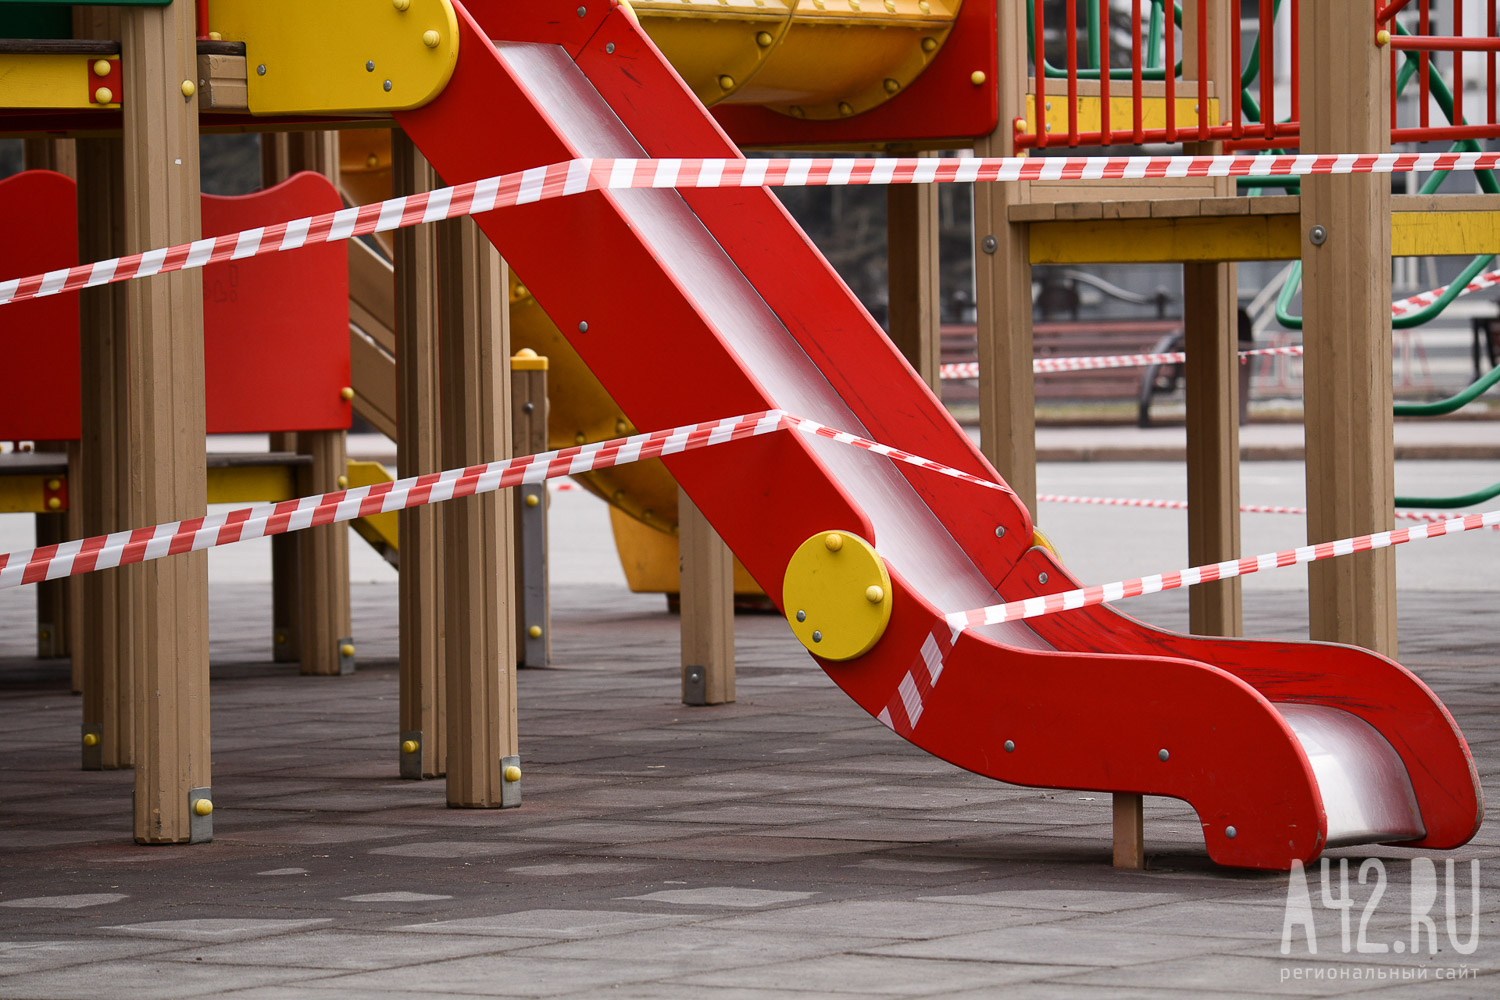 На прогулке в частном детсаду Москвы четырёхлетняя девочка сломала позвоночник